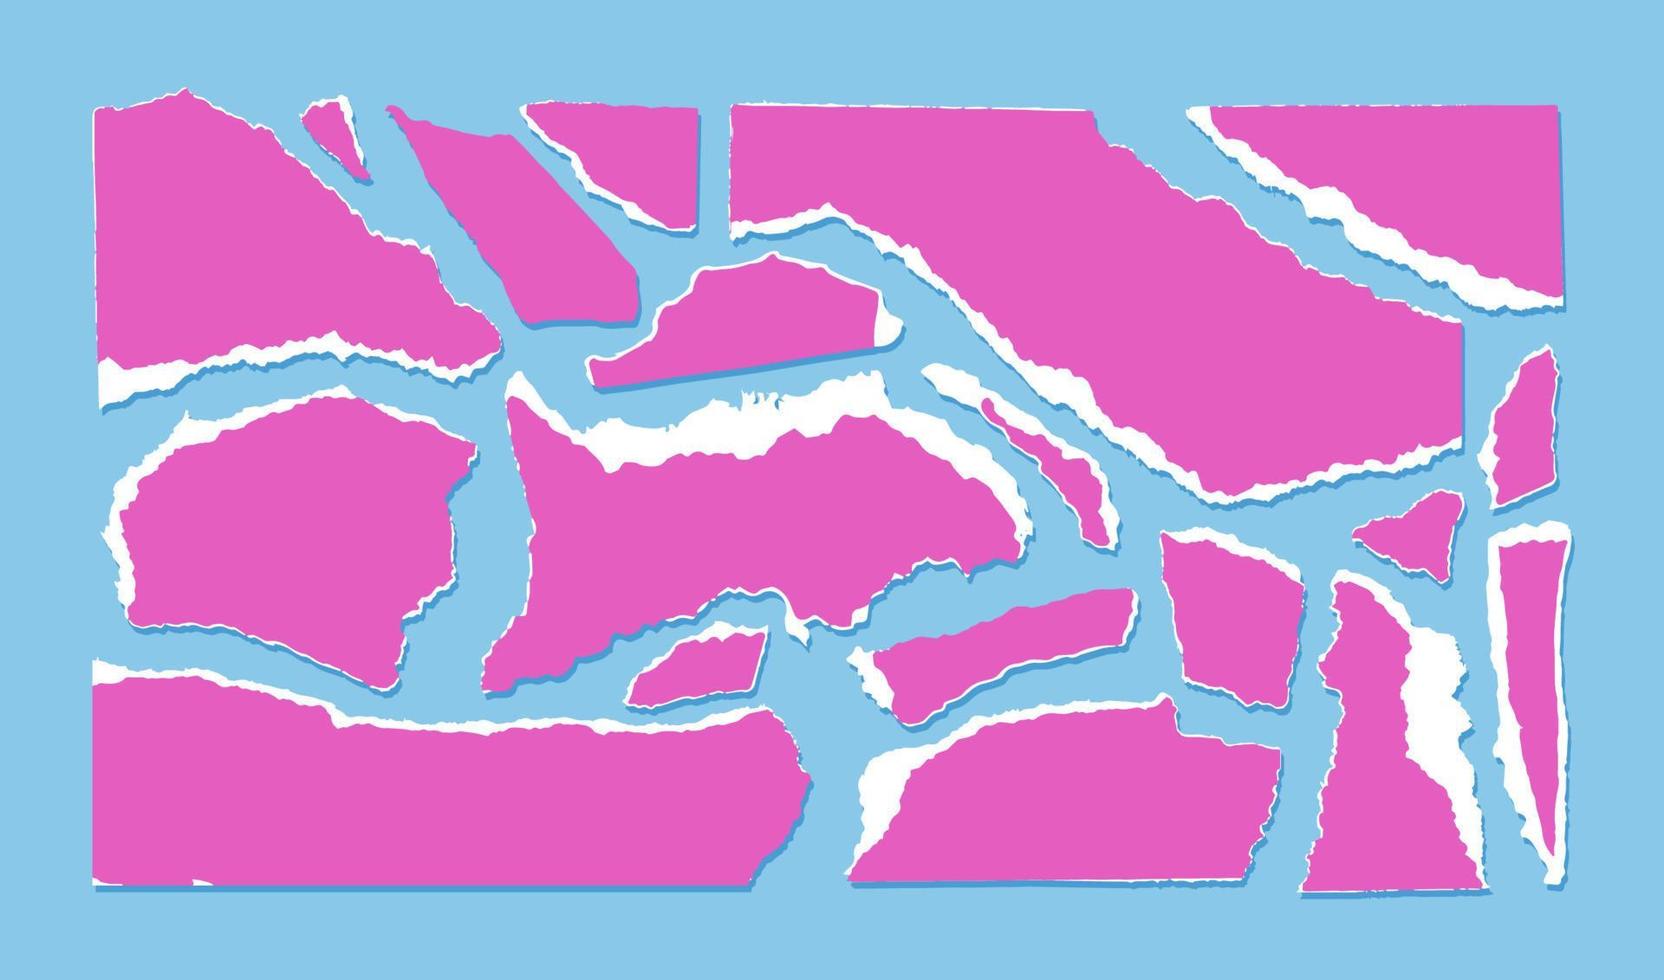 trasig rosa papper med vit kant isolerat på ljus blå bakgrund. vektor illustration av trasig papper skrot av annorlunda storlekar och former. smulad färgad bitar av sidor.